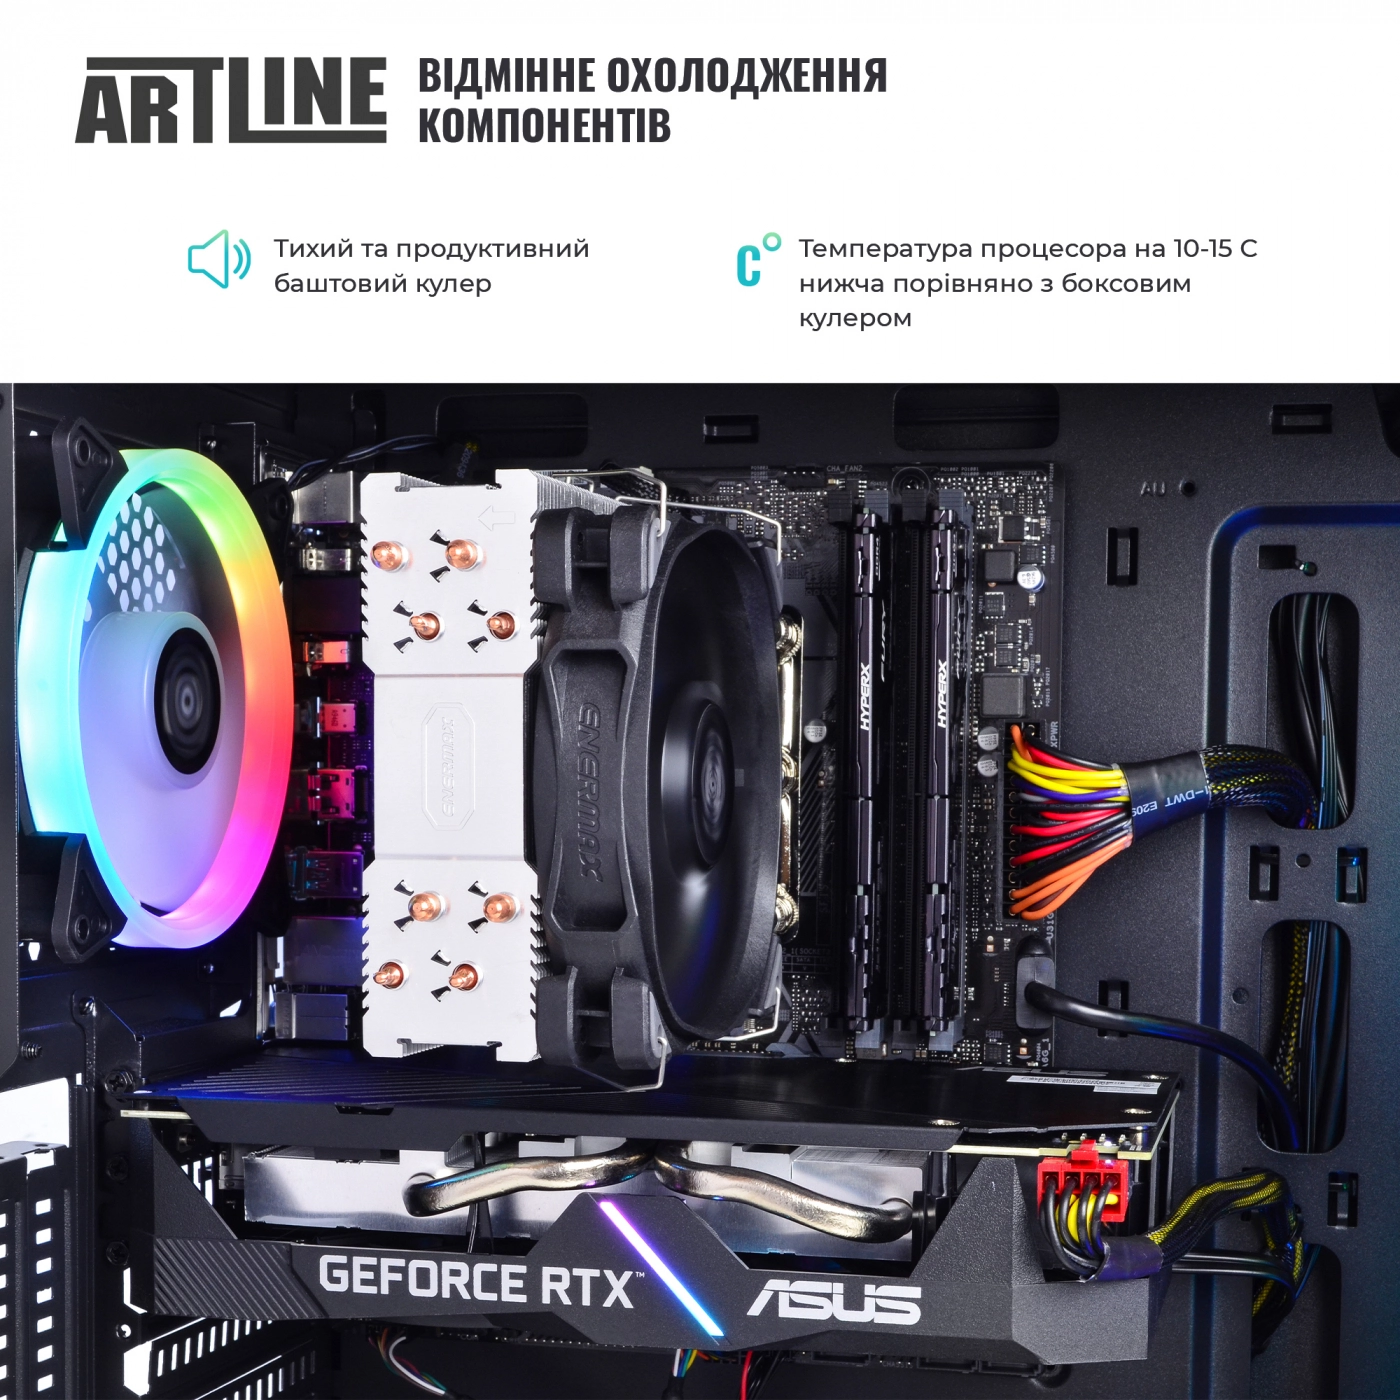 Купить Компьютер ARTLINE Gaming X90v15 - фото 5